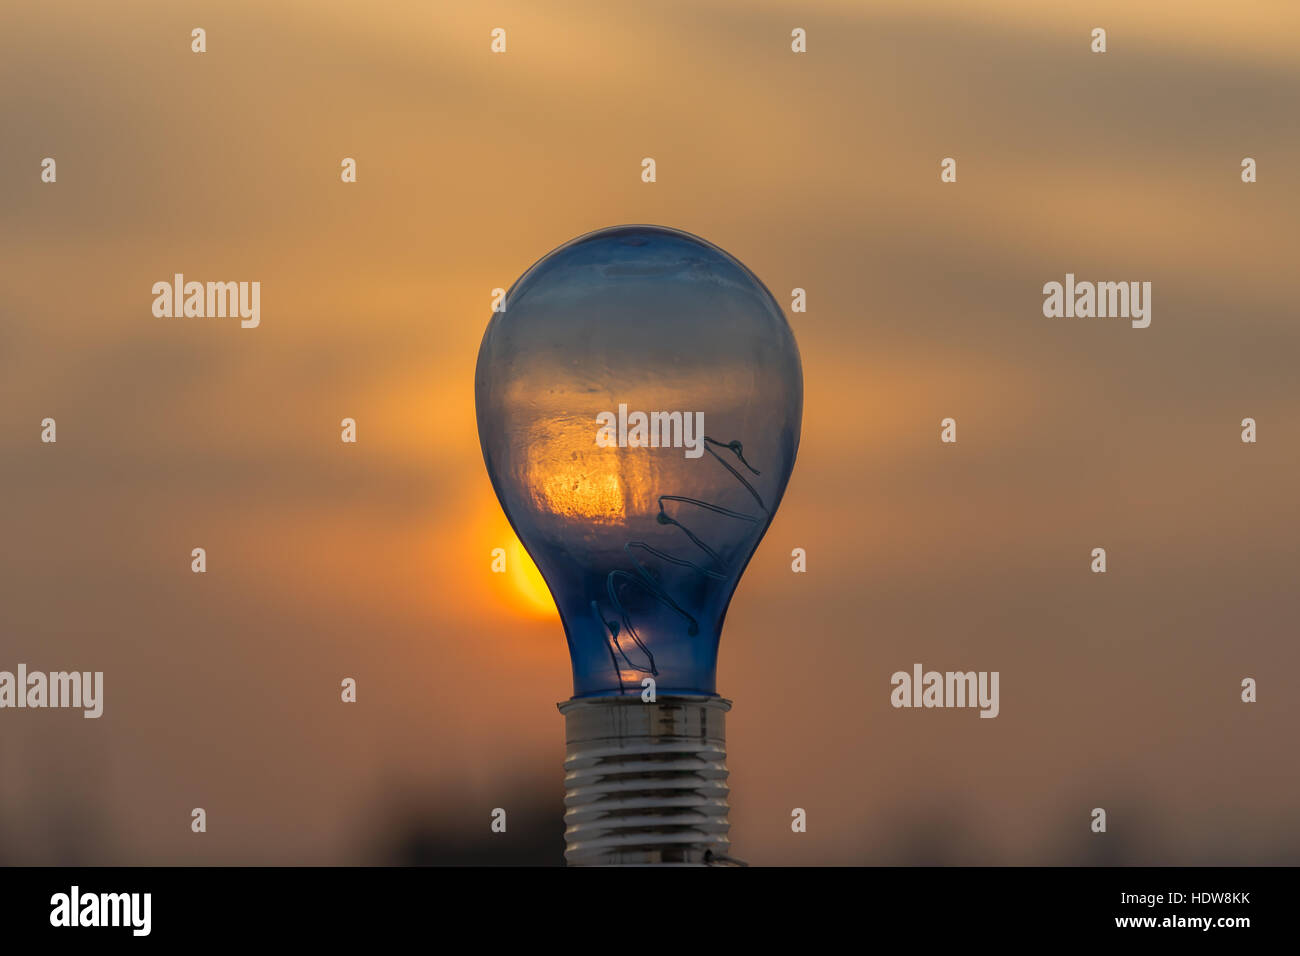 Geniale Idee, Glühbirne und Sonnenuntergang Hintergrund. Stockfoto